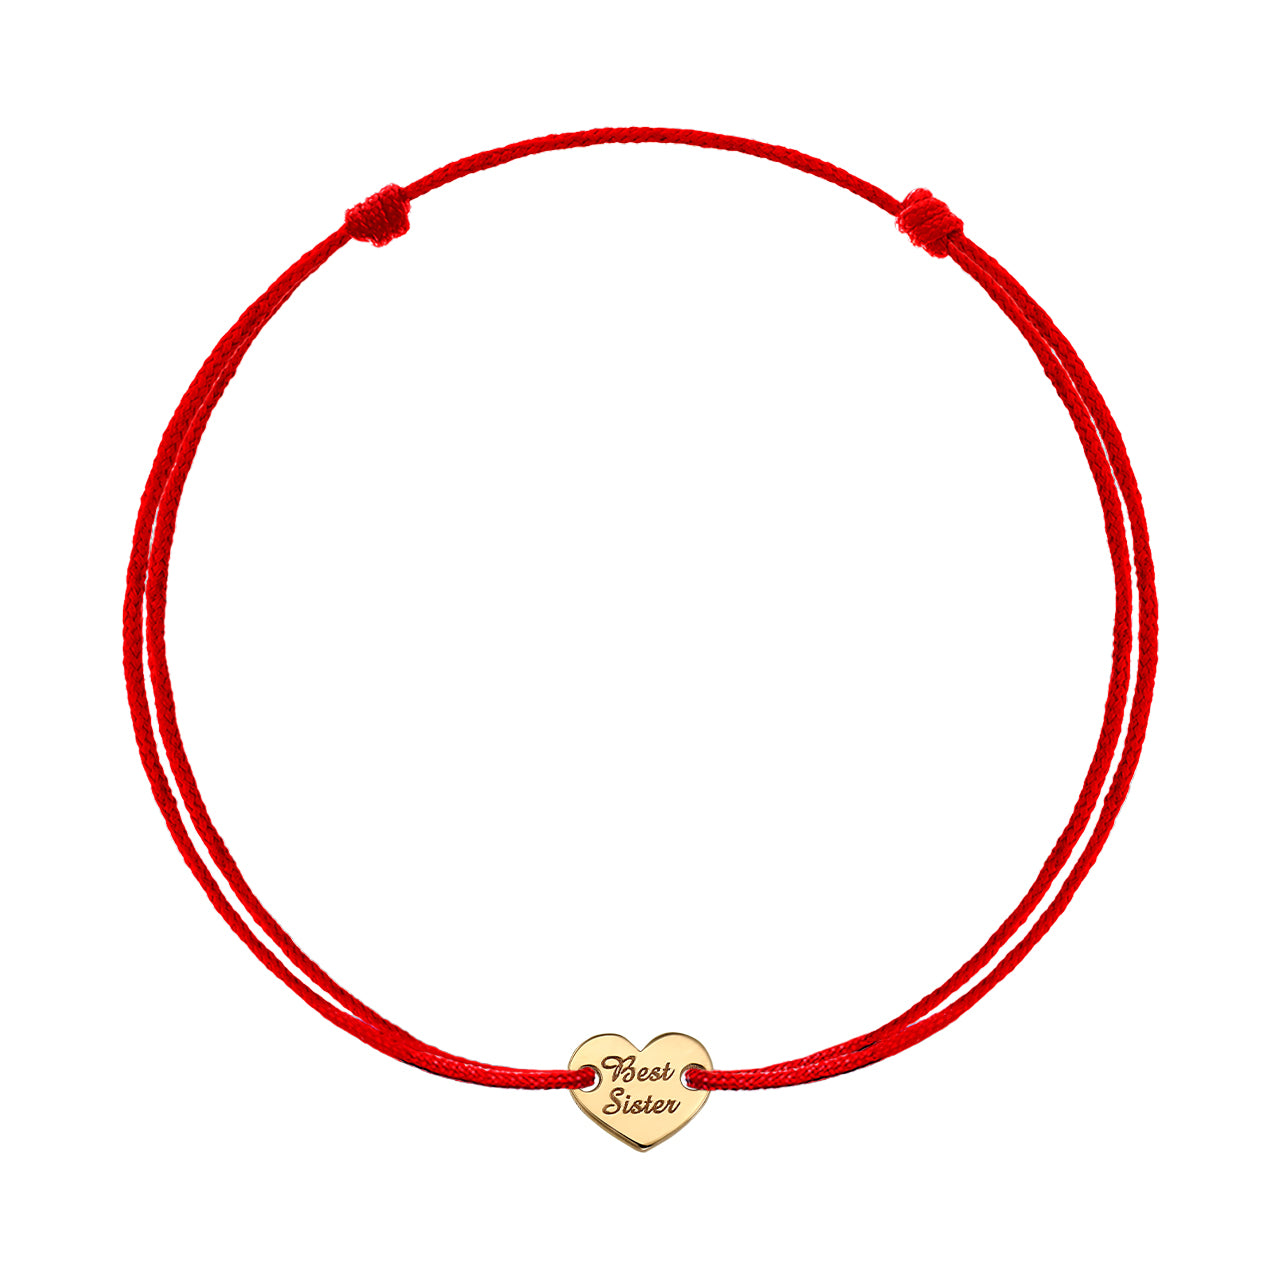 Bracelet on string "Best Sister", in rose gold - zeaetsia